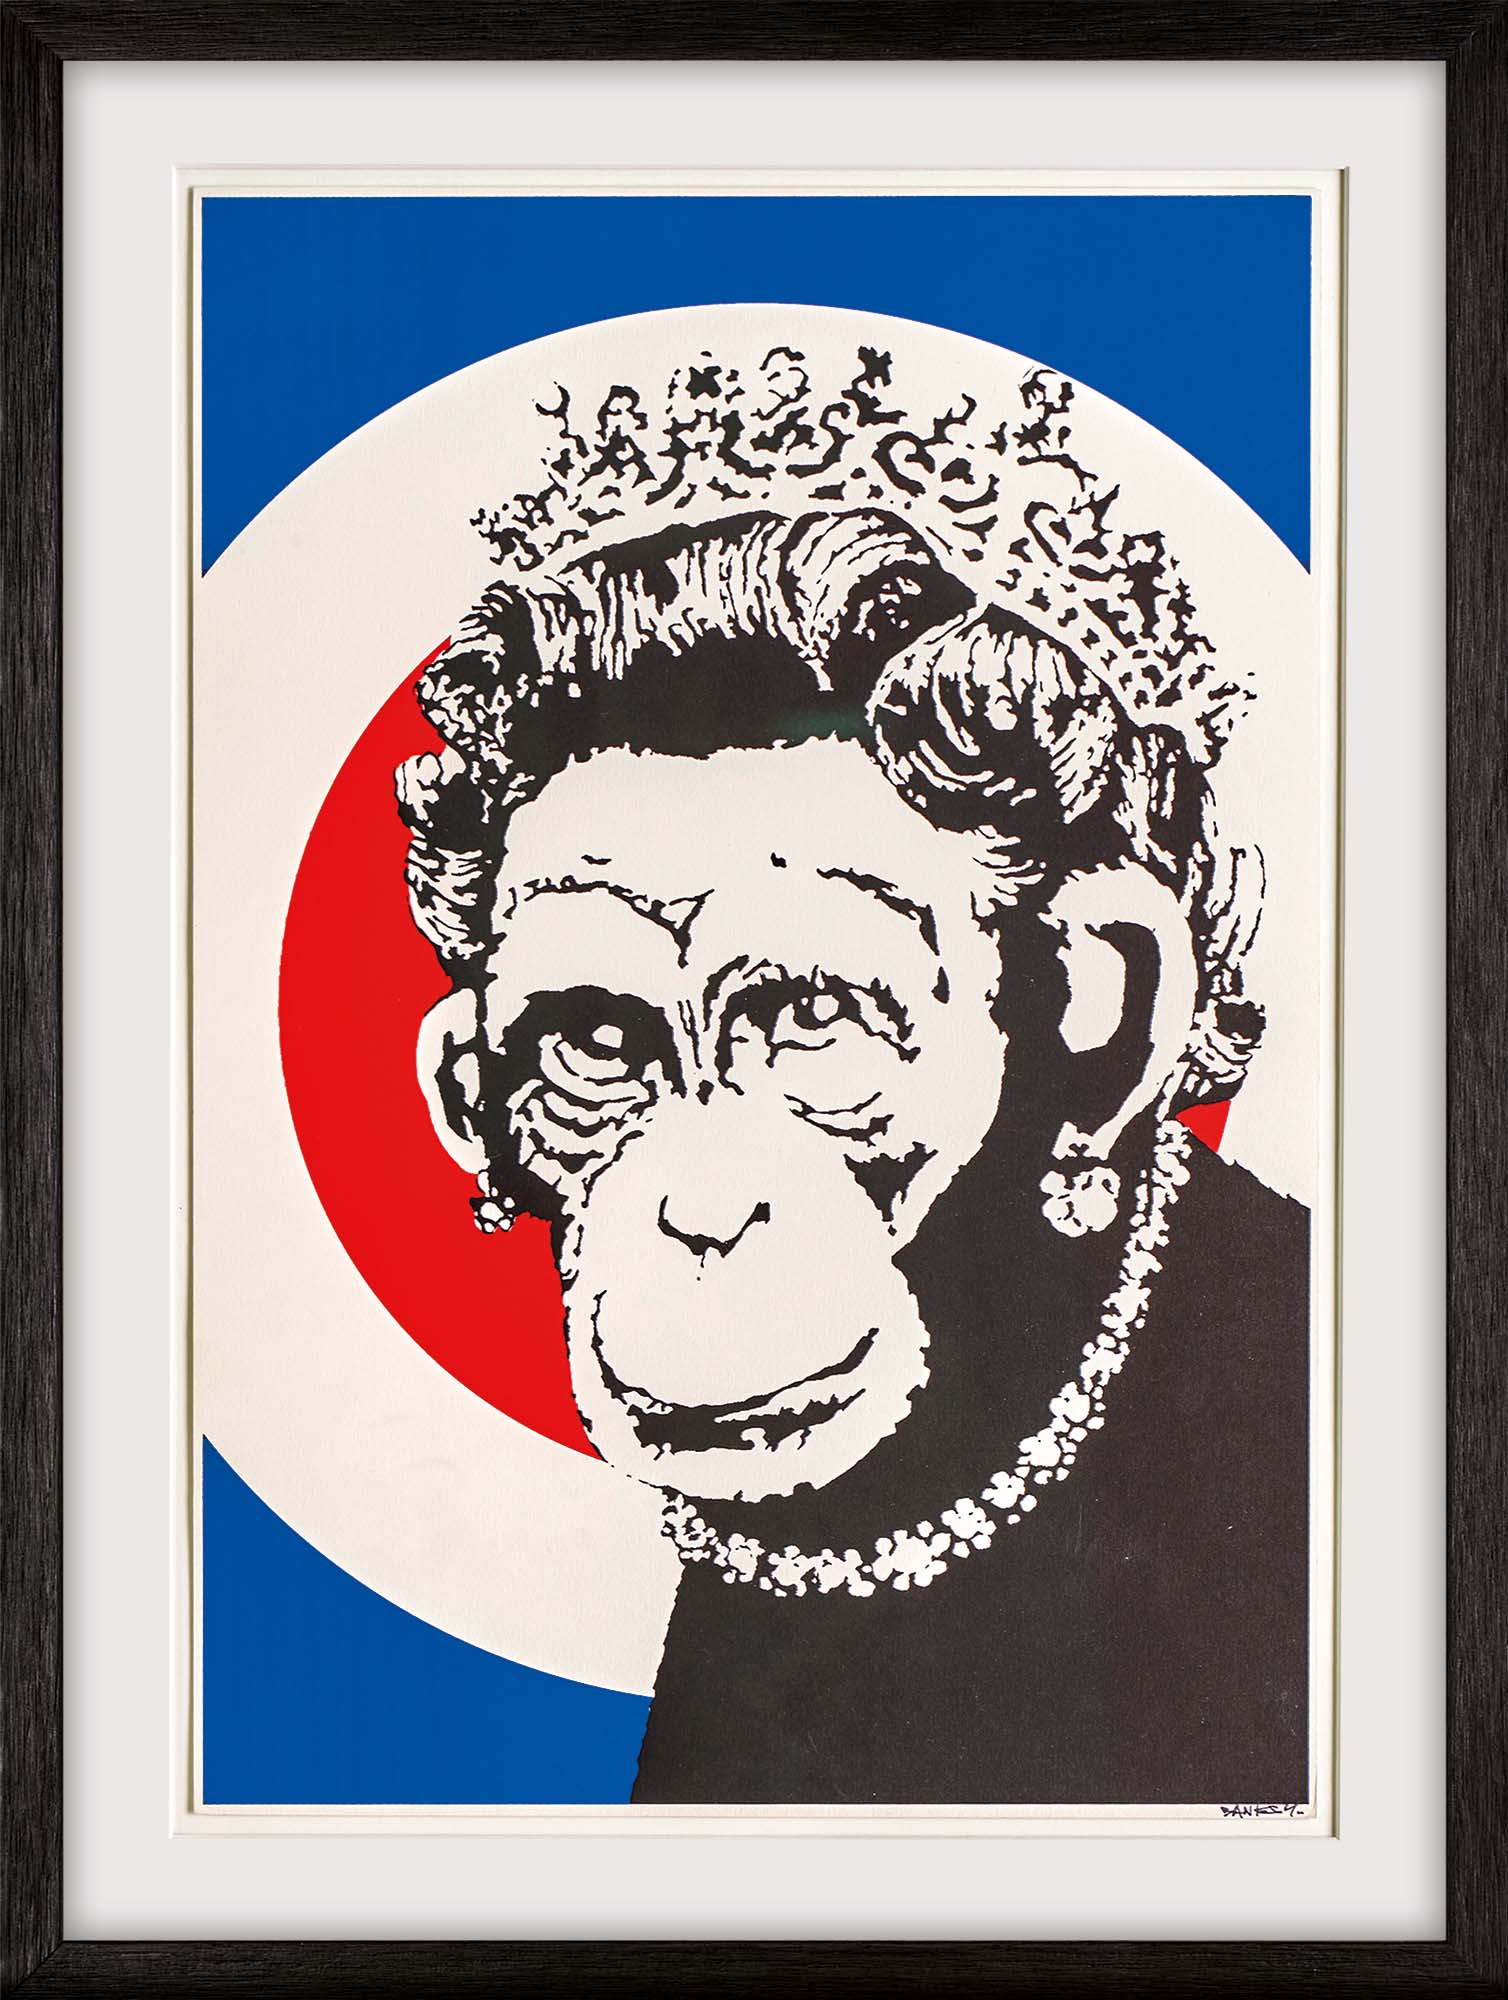 Bild "Monkey Queen" (2003) von Banksy